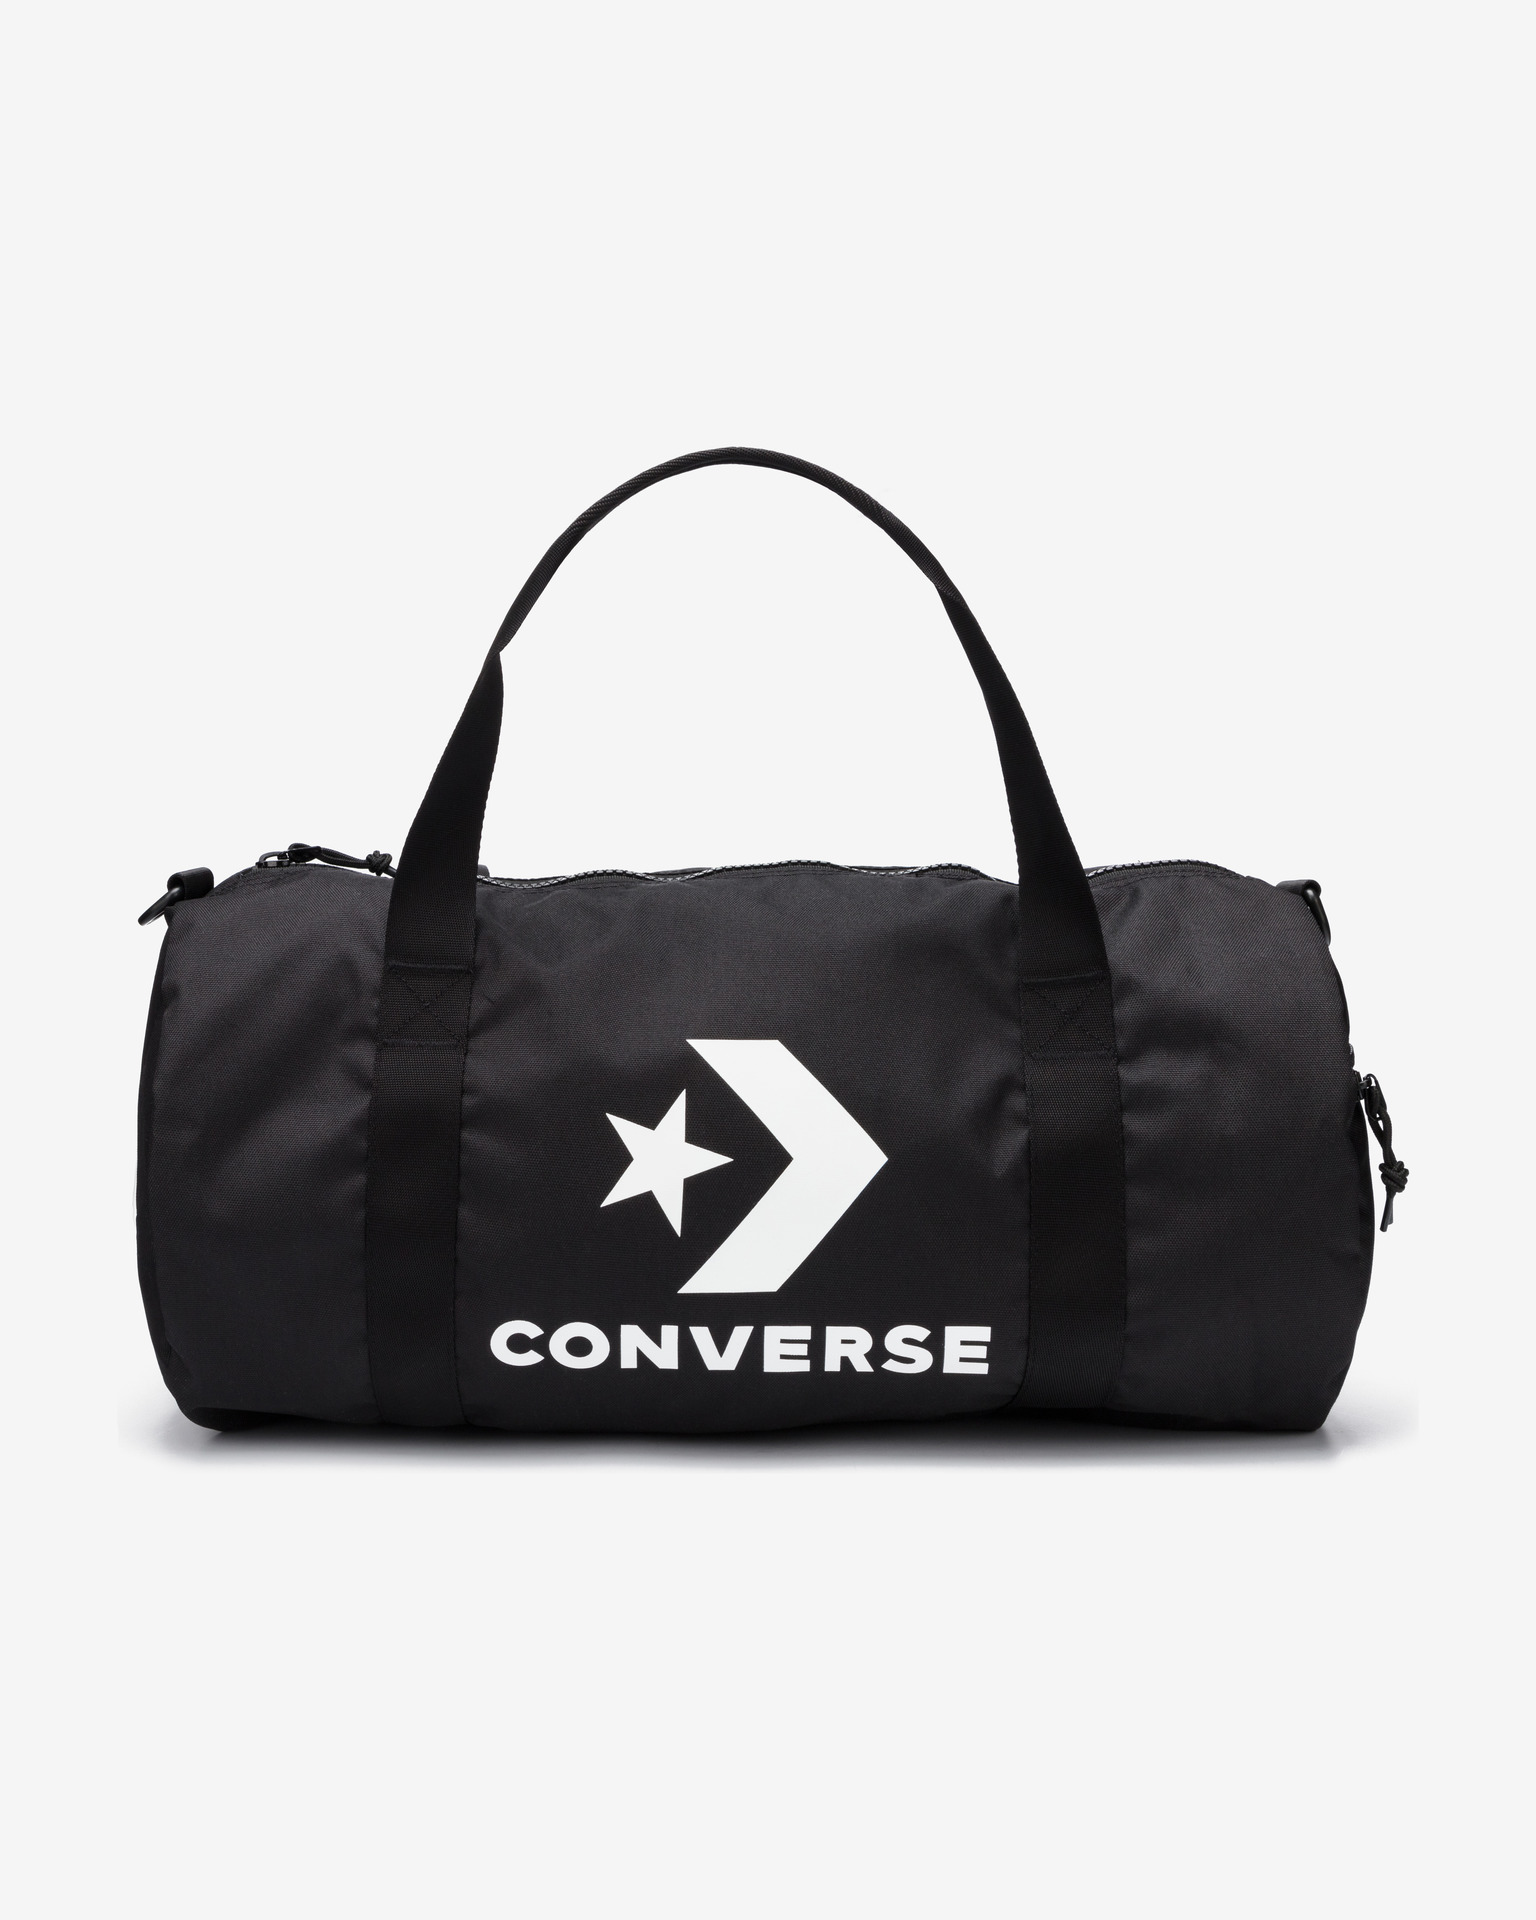 converse weekend bag